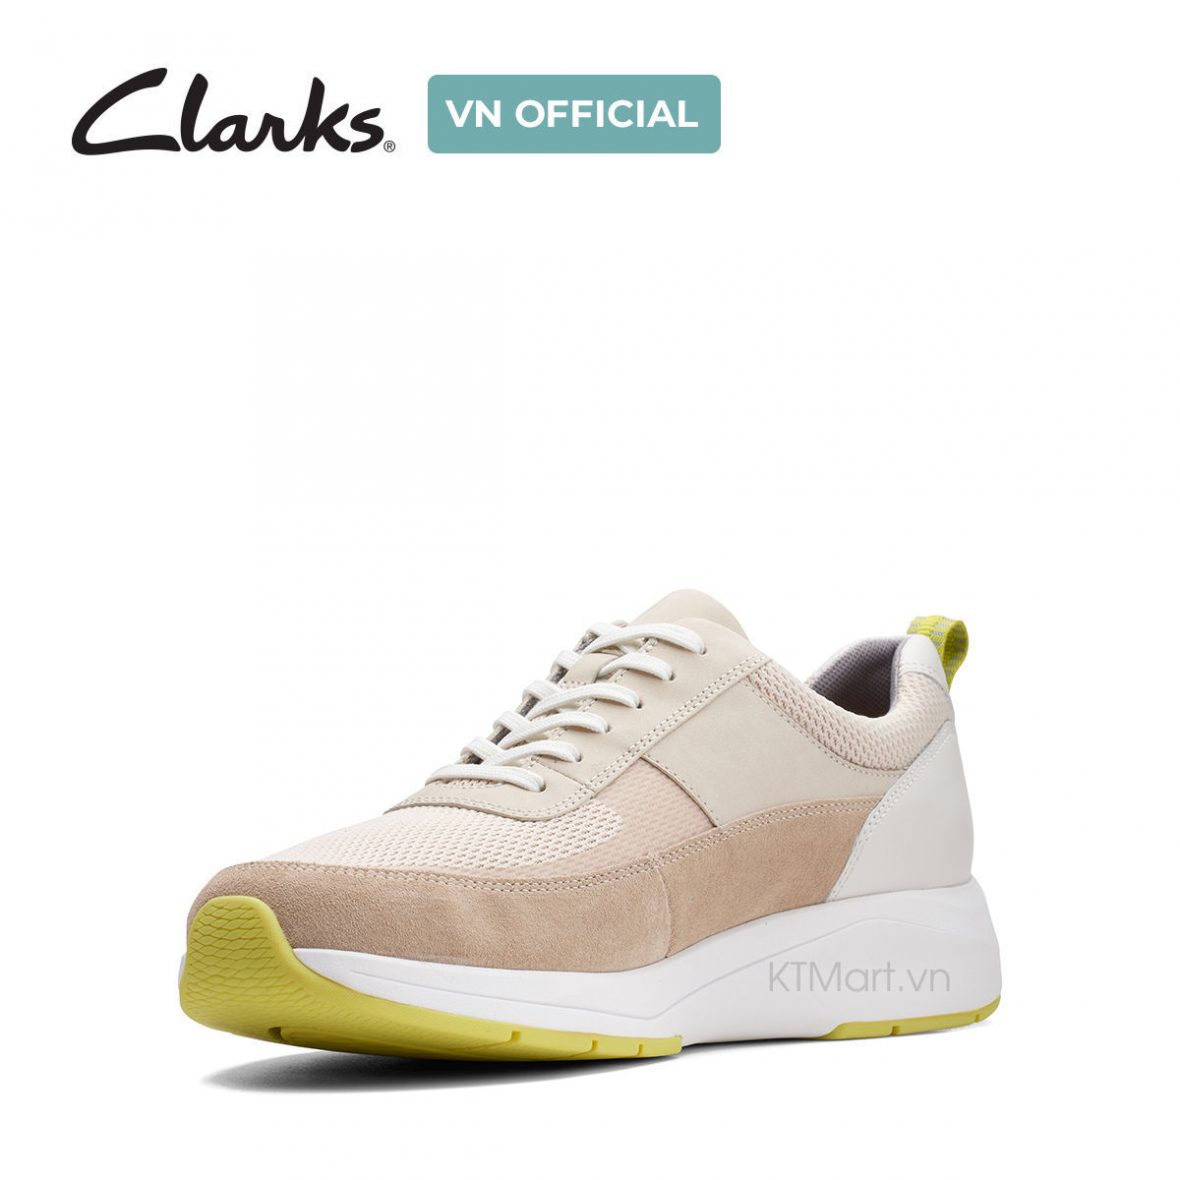 Clarks Men’s Coplin Go Nubuck Sneaker 2615249 ktmart 1